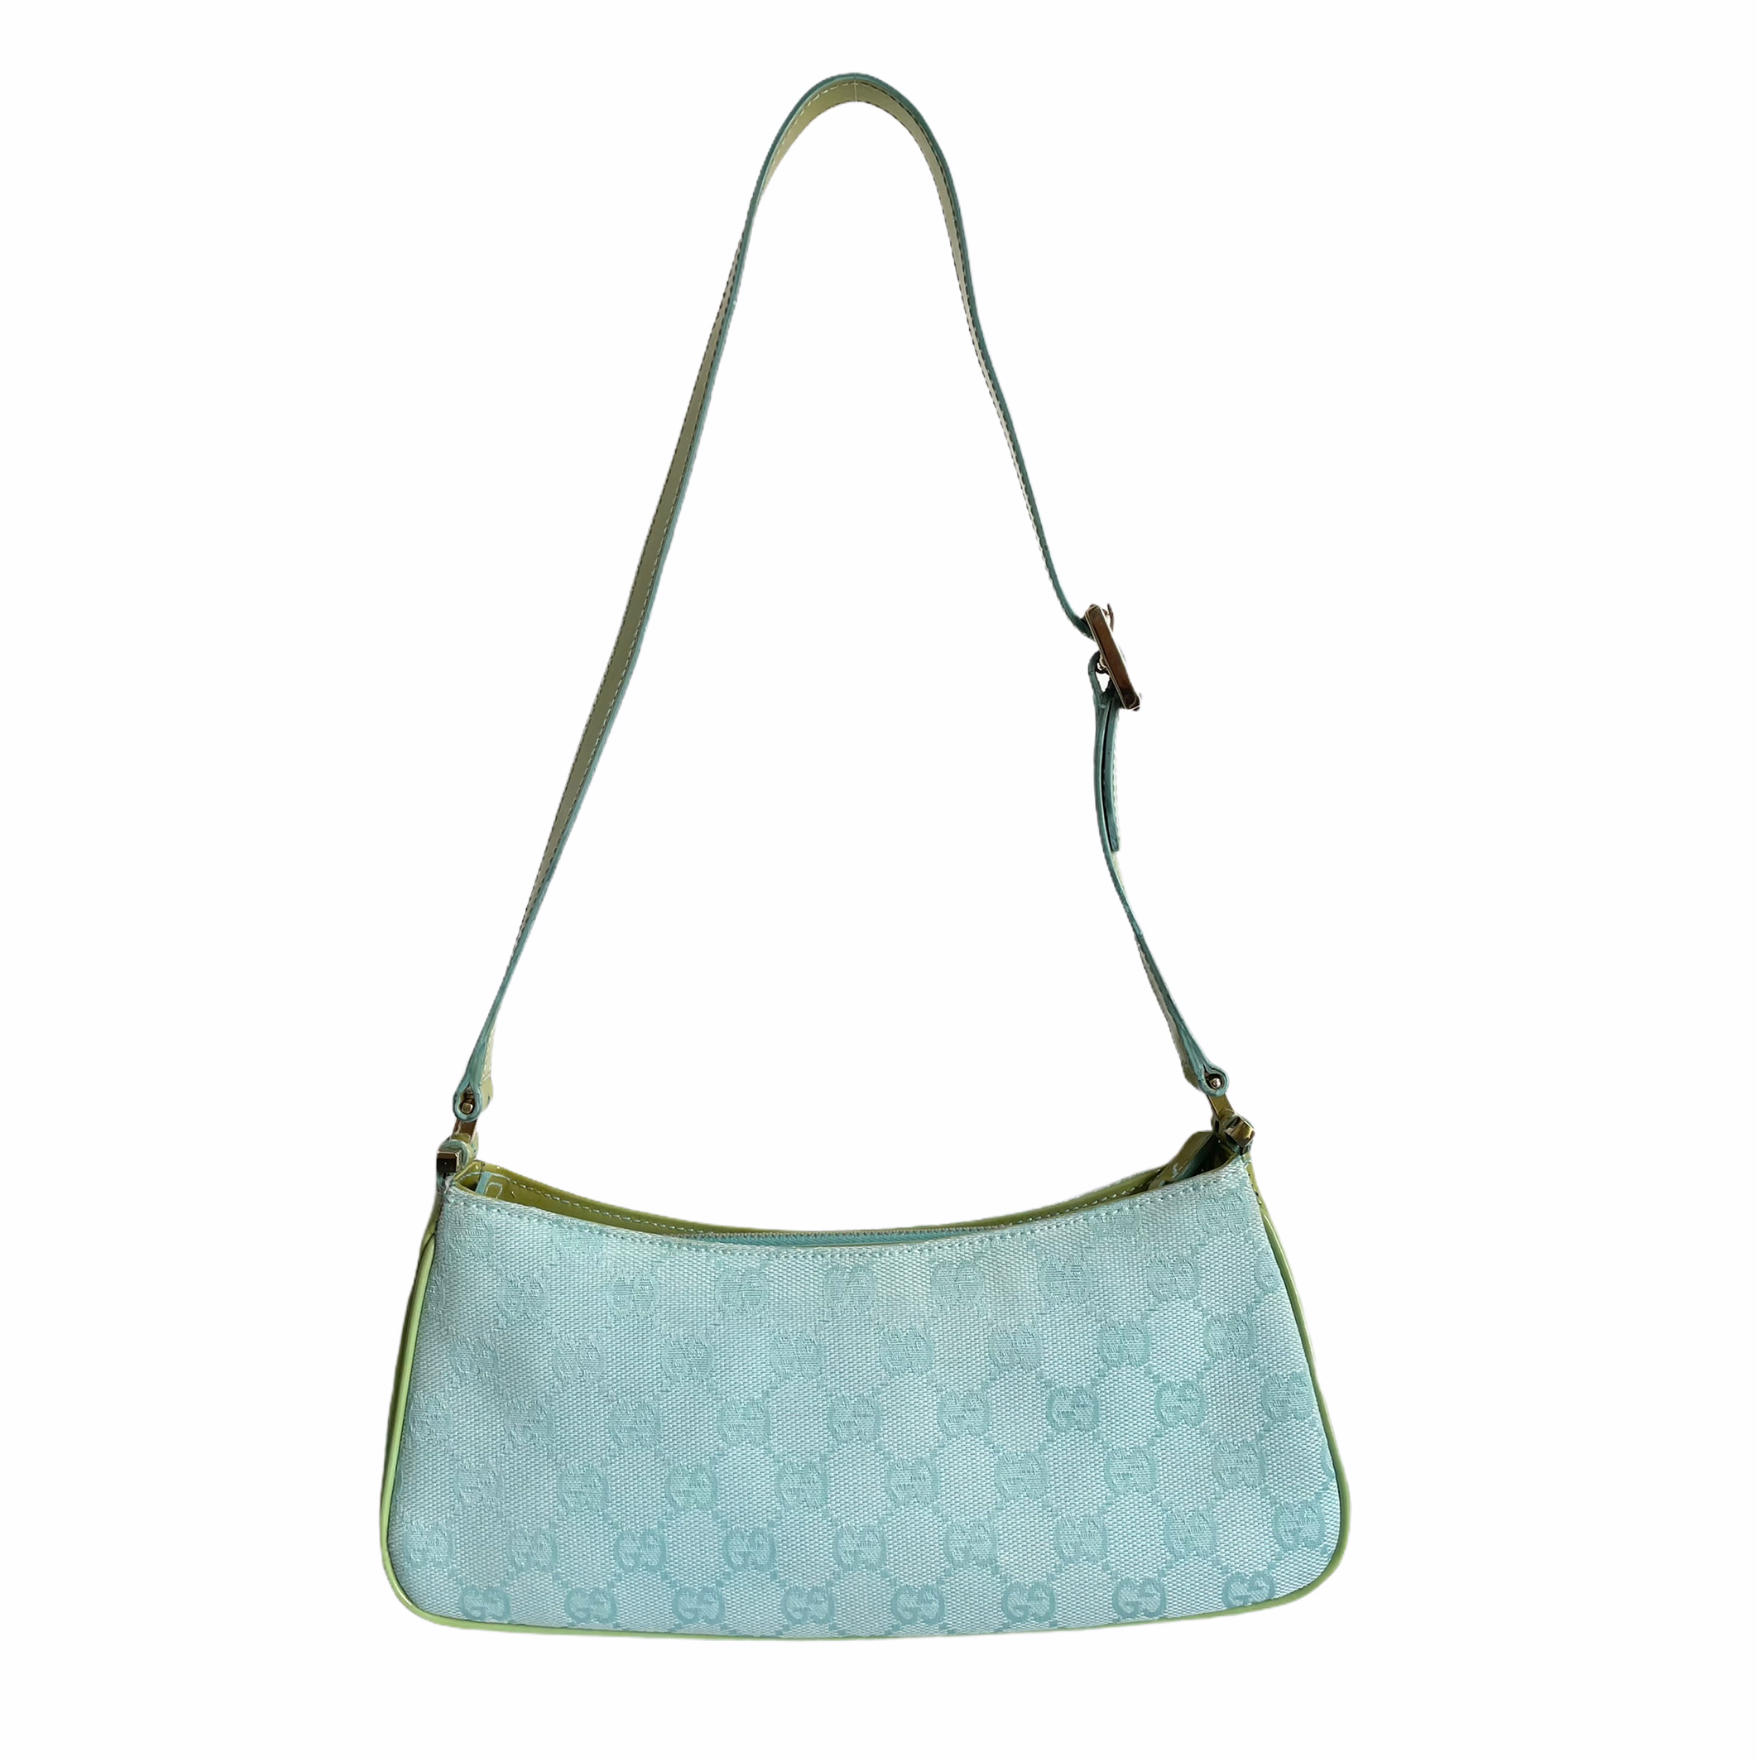 Gucci Monogram Baguette Shoulder Bag in Blue and Green